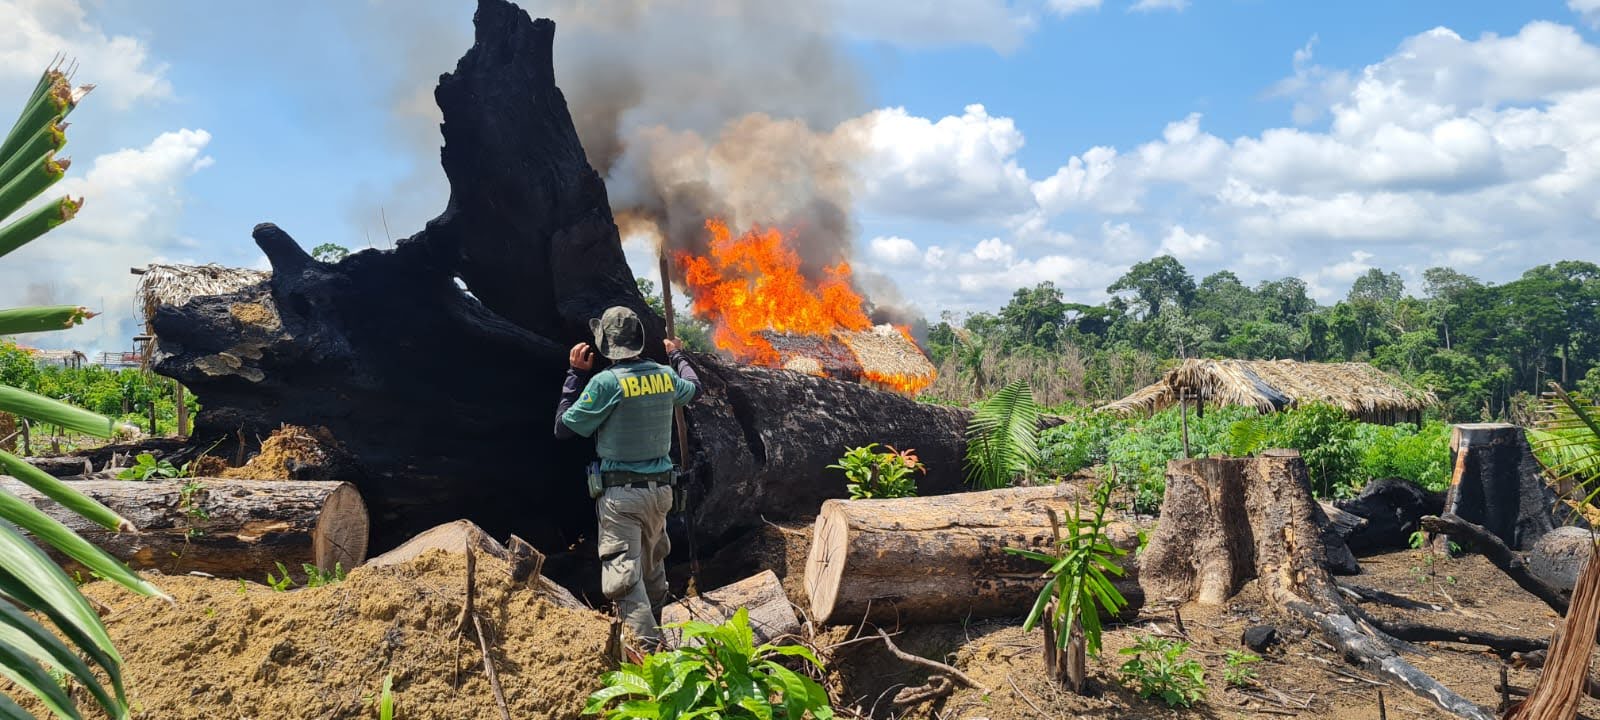 Organização criminosa comandava grilagem em terra de indígenas isolados no Pará, aponta investigação